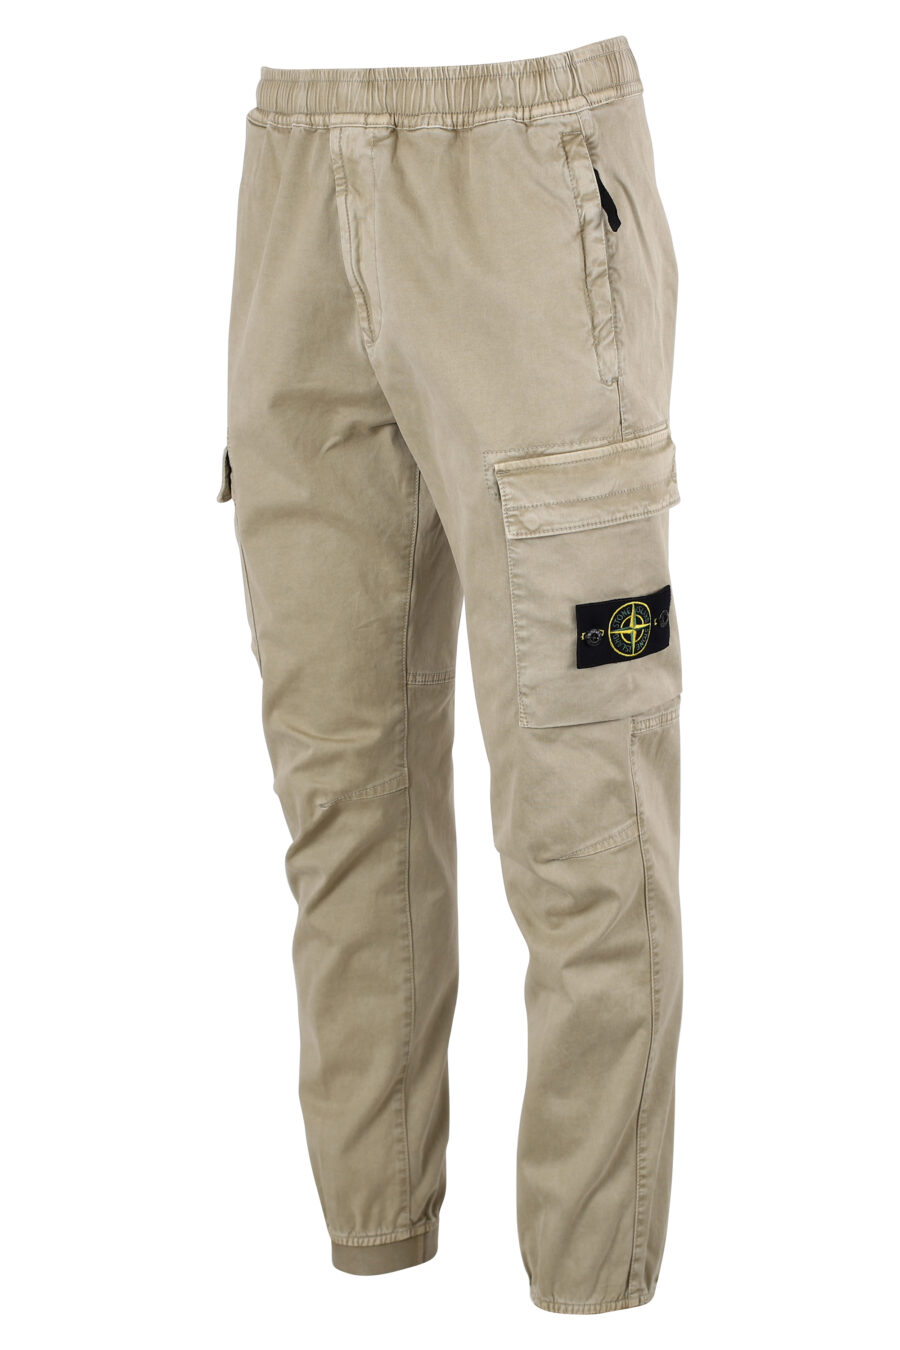 Pantalón beige estilo cargo con parche lateral - IMG 8326